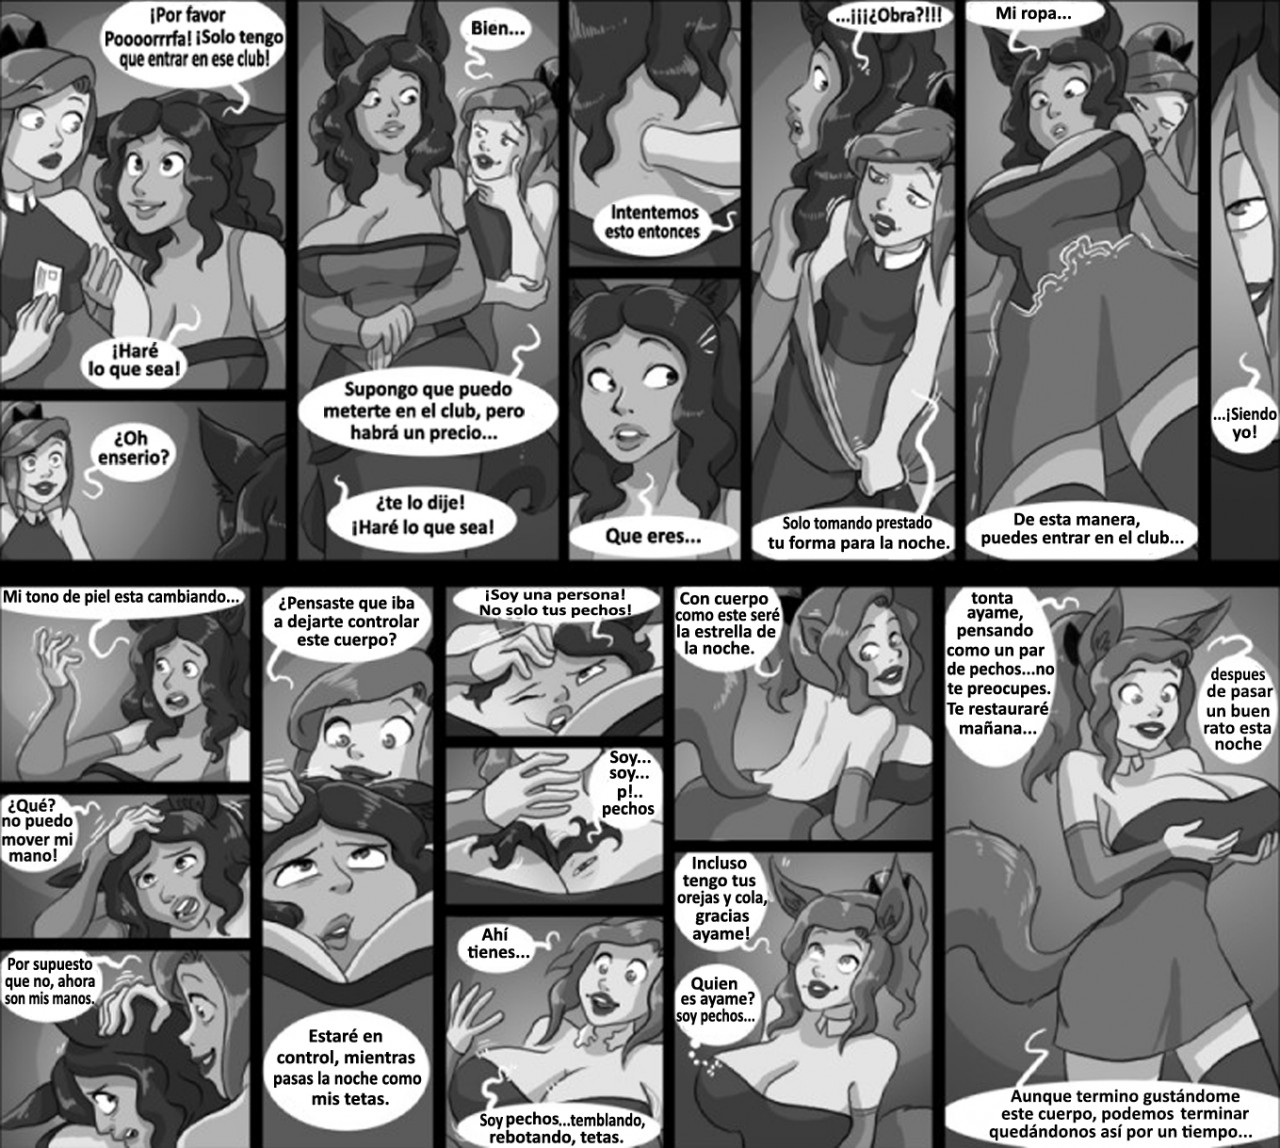 Girls night comic spanish by chesshire88. 